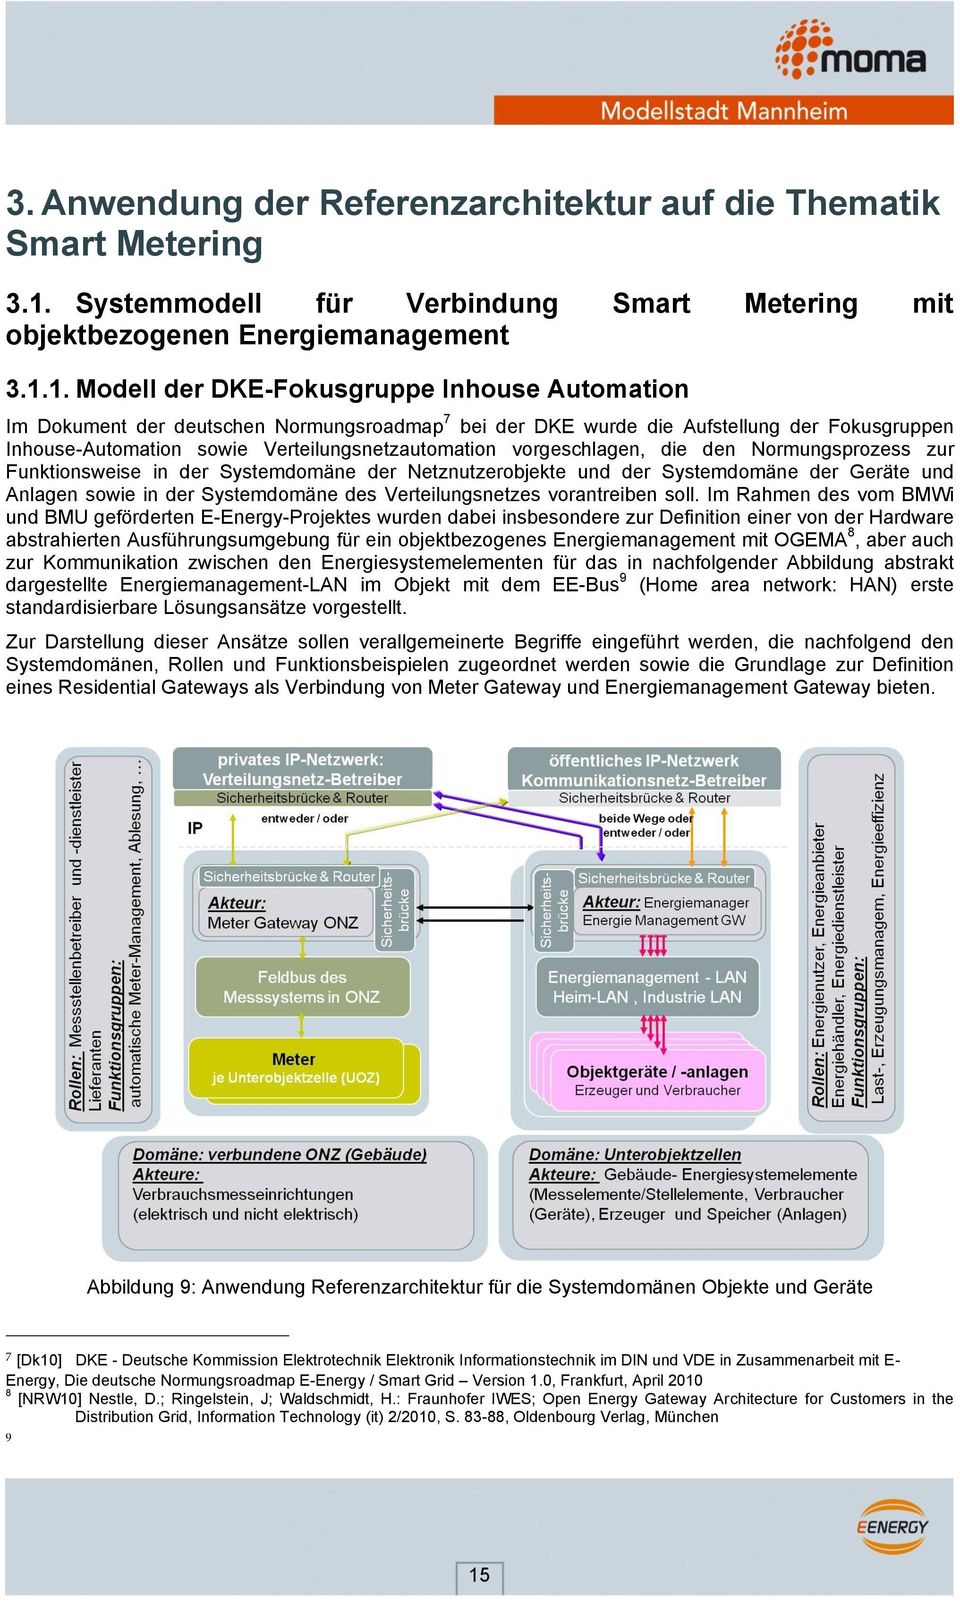 1. Modell der DKE-Fokusgruppe Inhouse Automation Im Dokument der deutschen Normungsroadmap 7 bei der DKE wurde die Aufstellung der Fokusgruppen Inhouse-Automation sowie Verteilungsnetzautomation